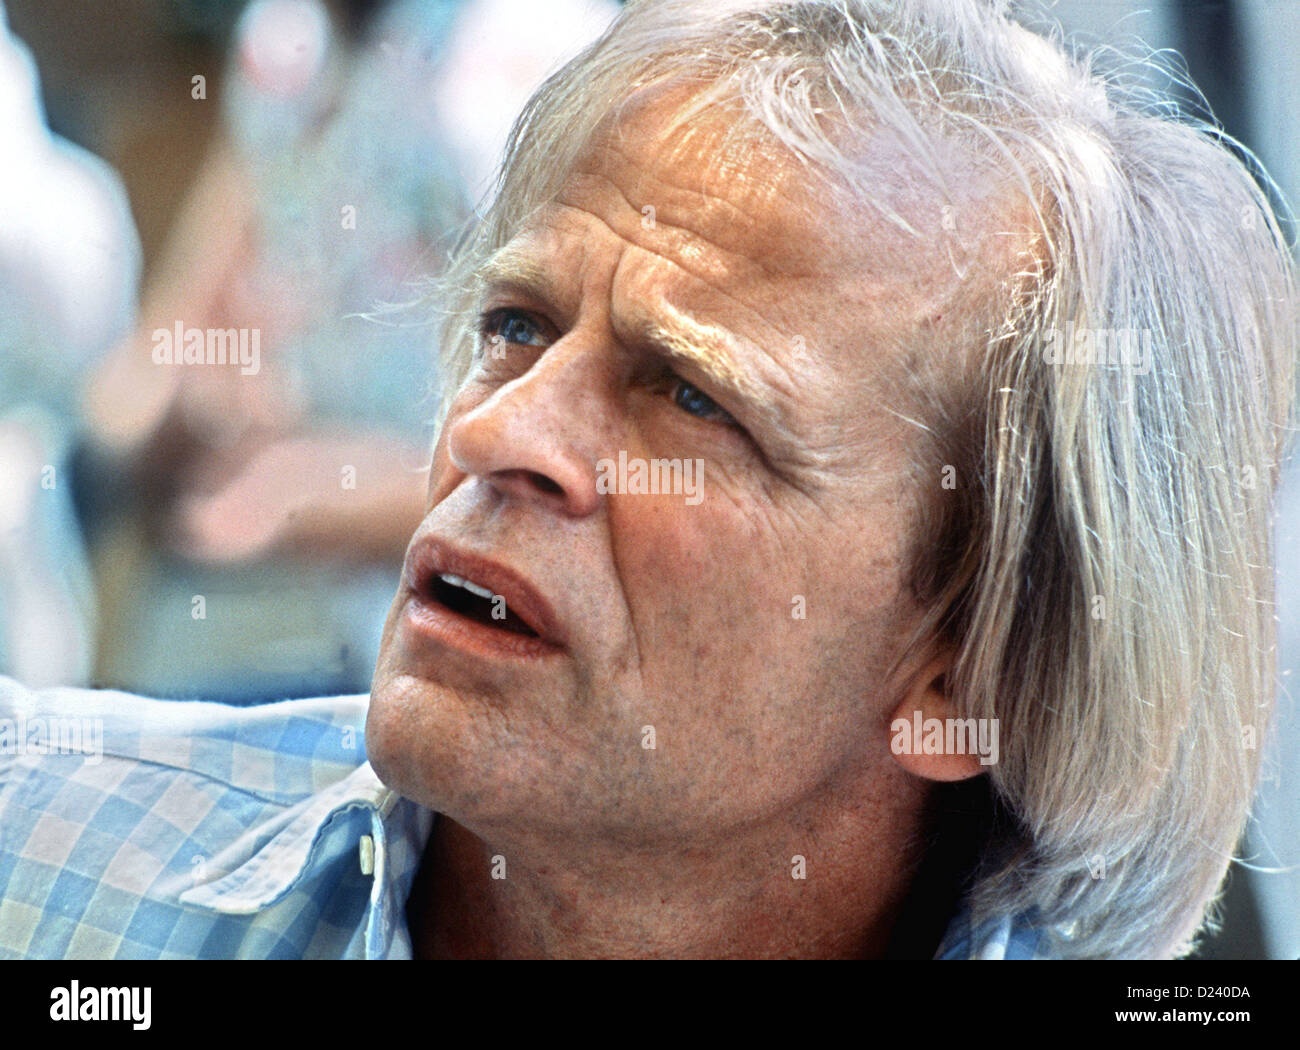 (Dpa file) - attore tedesco Klaus Kinski, mostrato durante il Festival Internazionale del Cinema di Cannes, Francia, 25 maggio 1982. Un'enfant terrible" dell'industria cinematografica, i suoi film includono 'Aguirre, der Zorn Gottes' ('Aguirre: l'ira di Dio") e 'Nosferatu: Phantom der Nacht' ('Nosferatu il vampiro"). Kinski è nato il 18 ottobre 1926 a Danzica, Germania (ora Danzica, Polonia) sotto il nome di Nikolaus Guenther Nakszynski e morì il 23 novembre 1991 in Lagunitas, California, di un attacco di cuore. Foto Stock